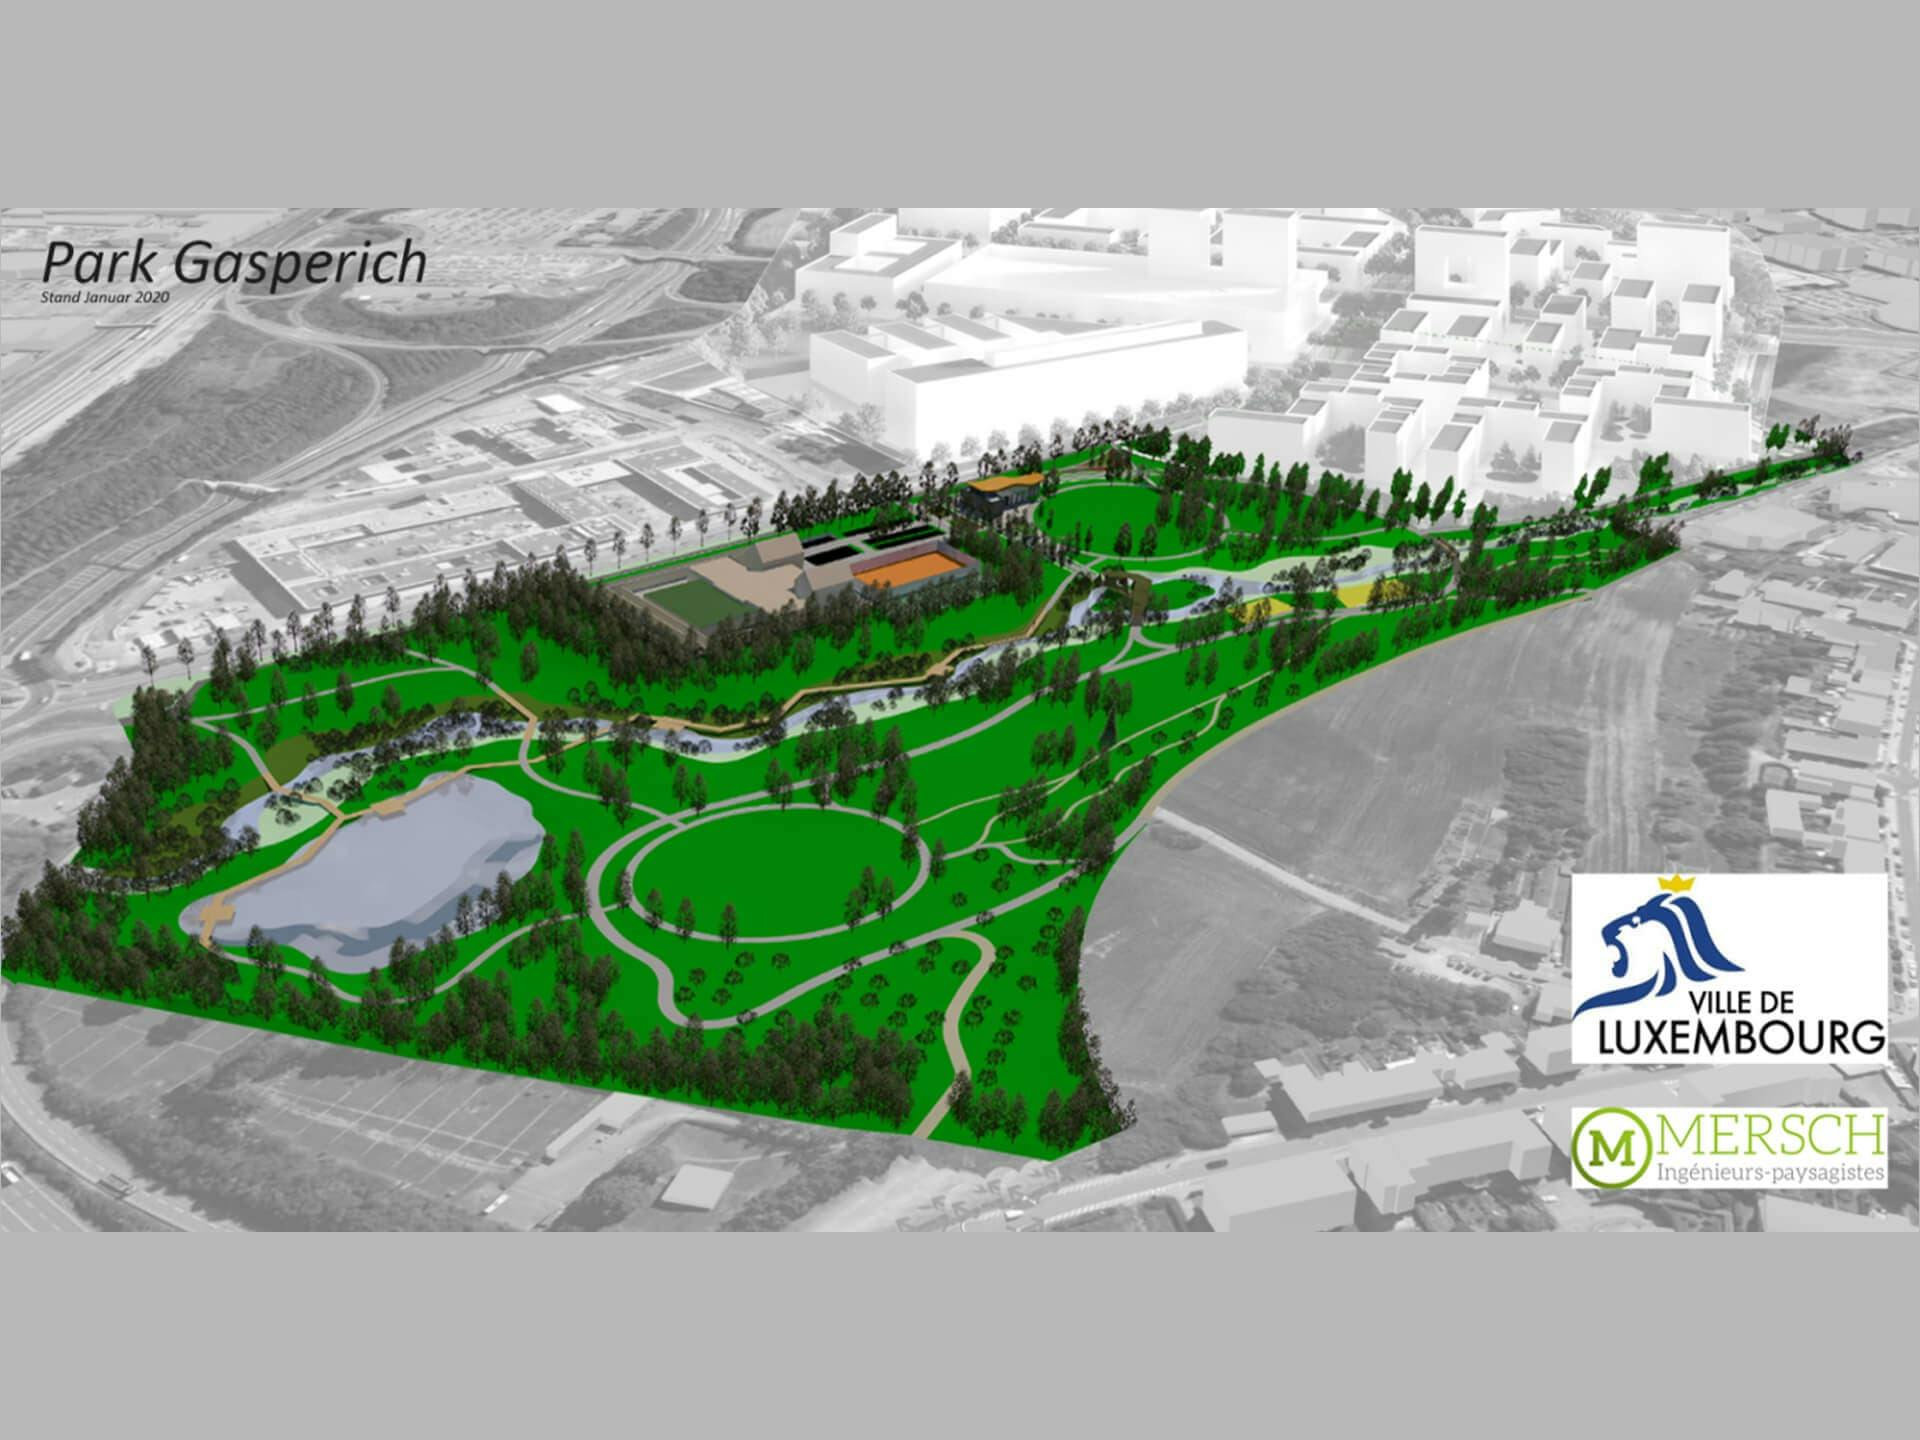 3D projection of the Parc de Gasperich.